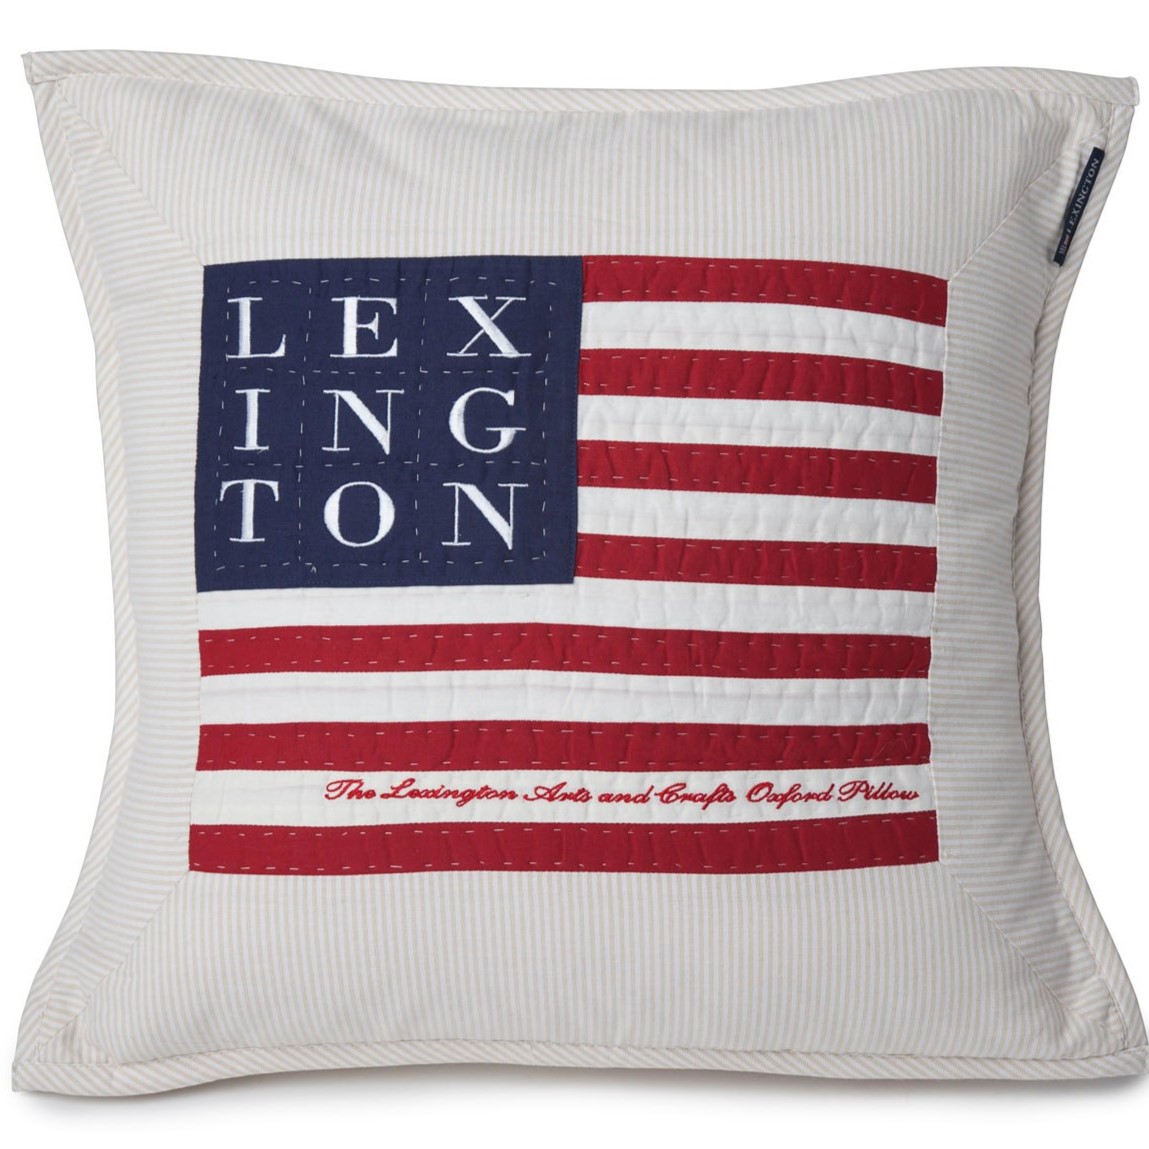 LEXINGTON COMPANY - "Logo Art & Crafts" Dekokissen